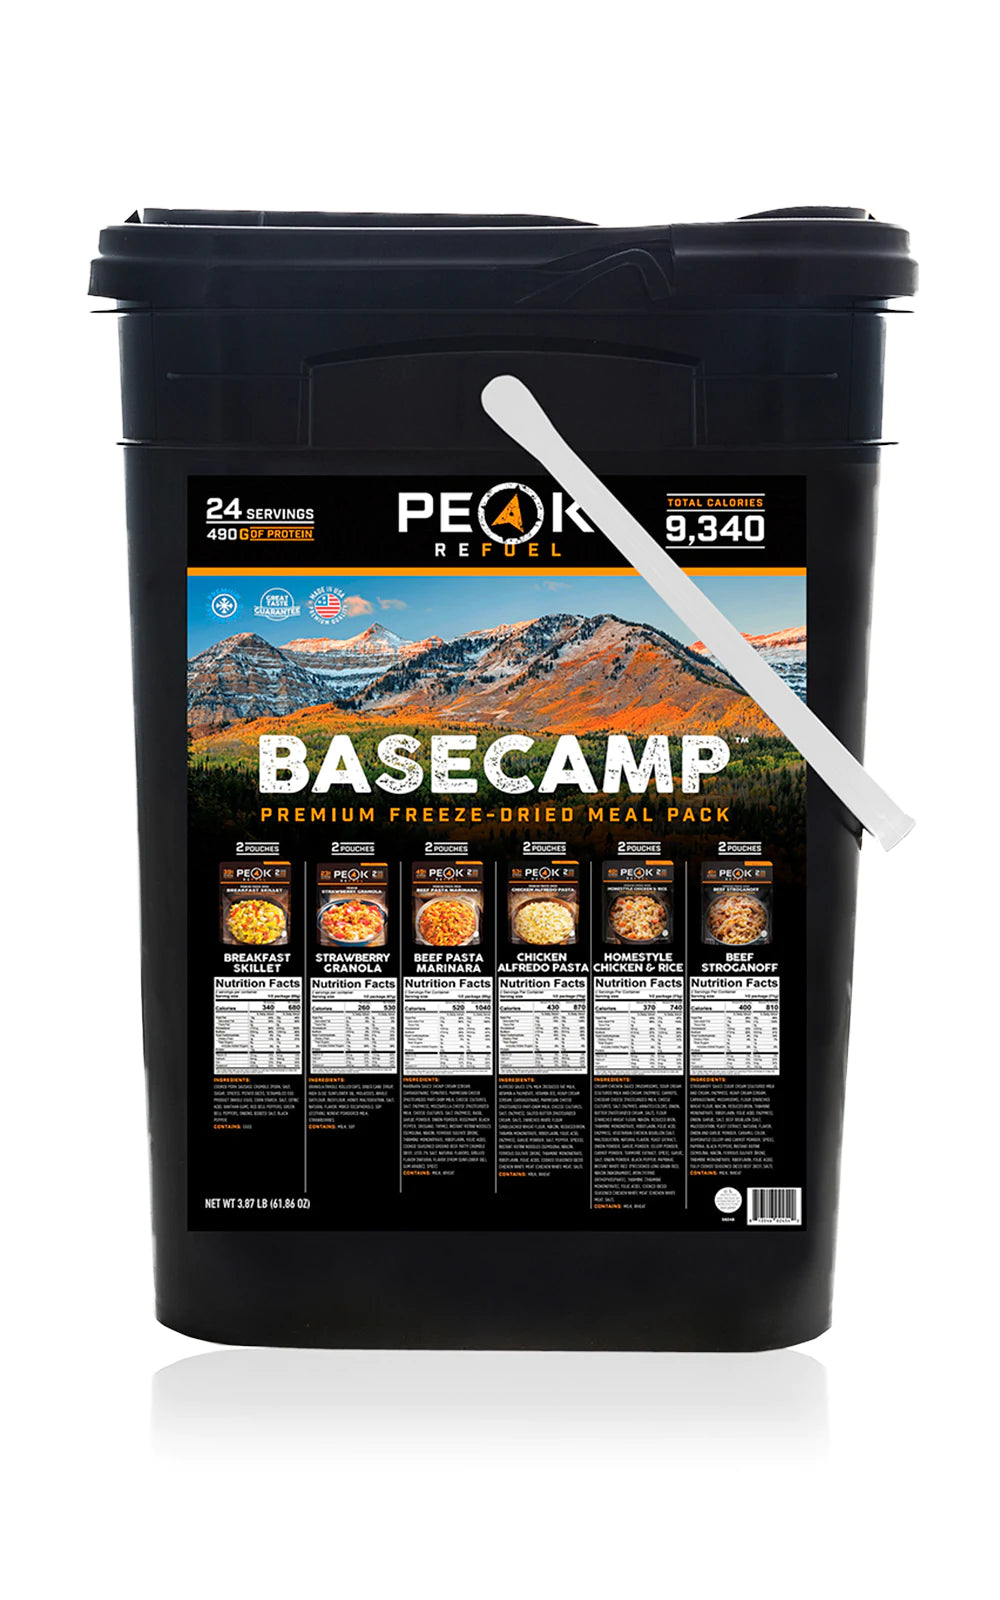 Peak Refuel BASECAMP 2.0 Premium Meals COMBO PACK